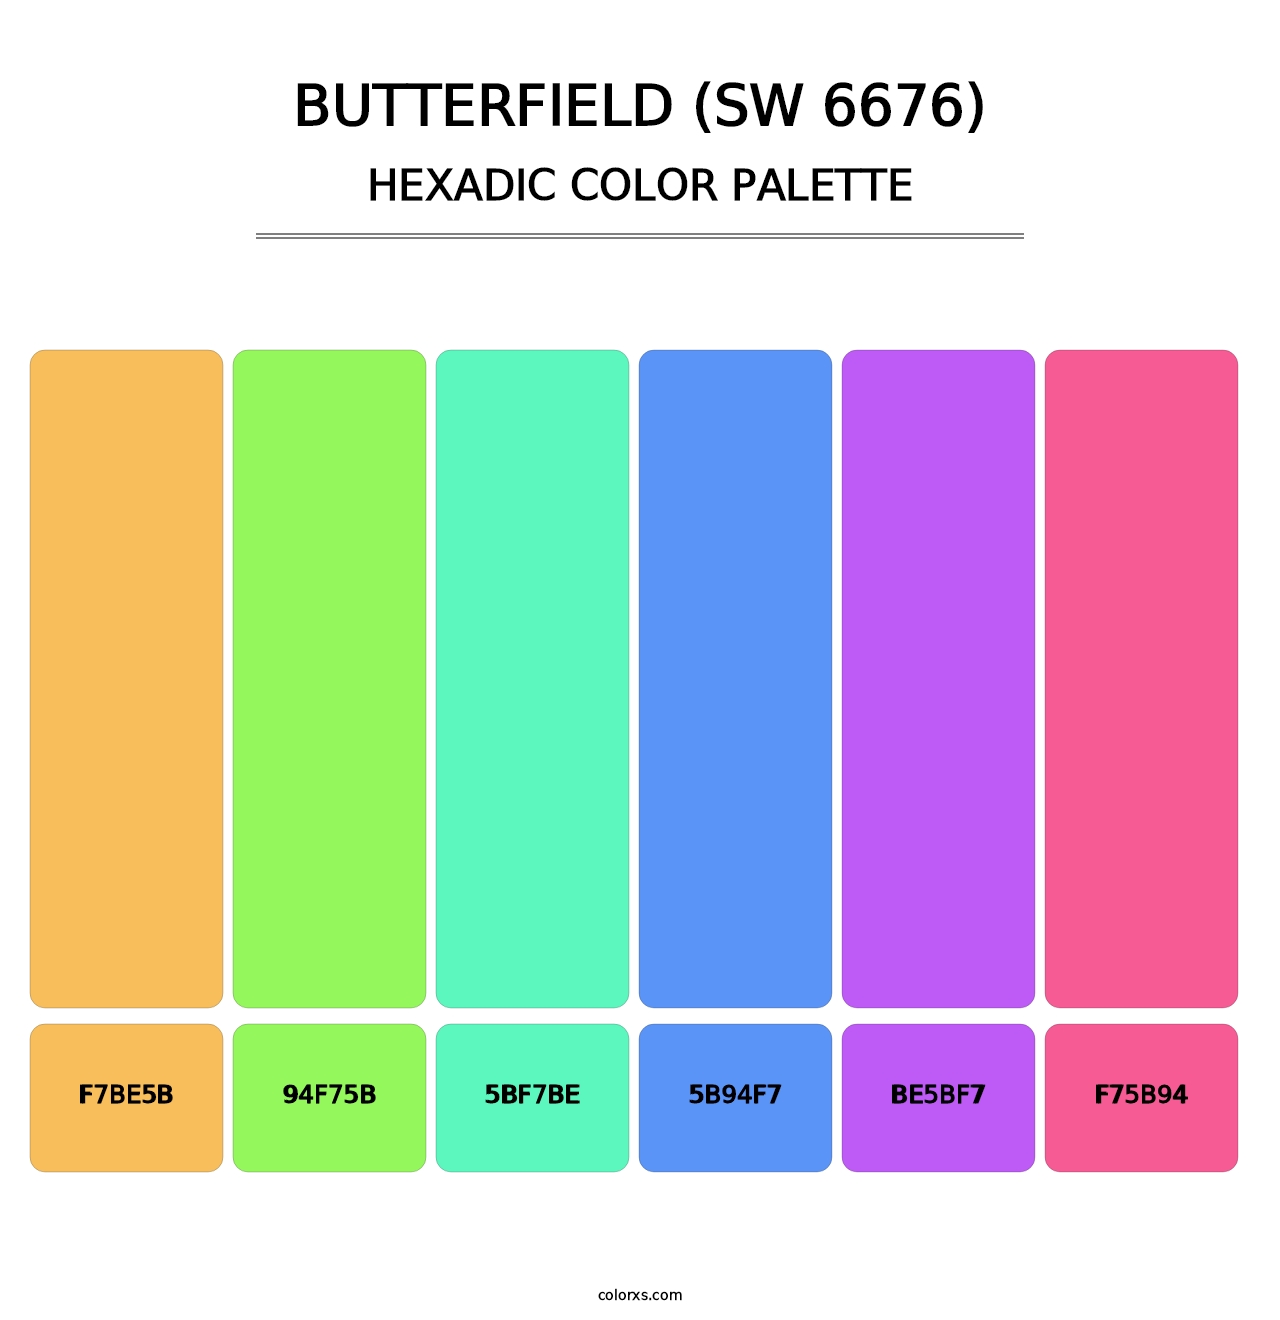 Butterfield (SW 6676) - Hexadic Color Palette